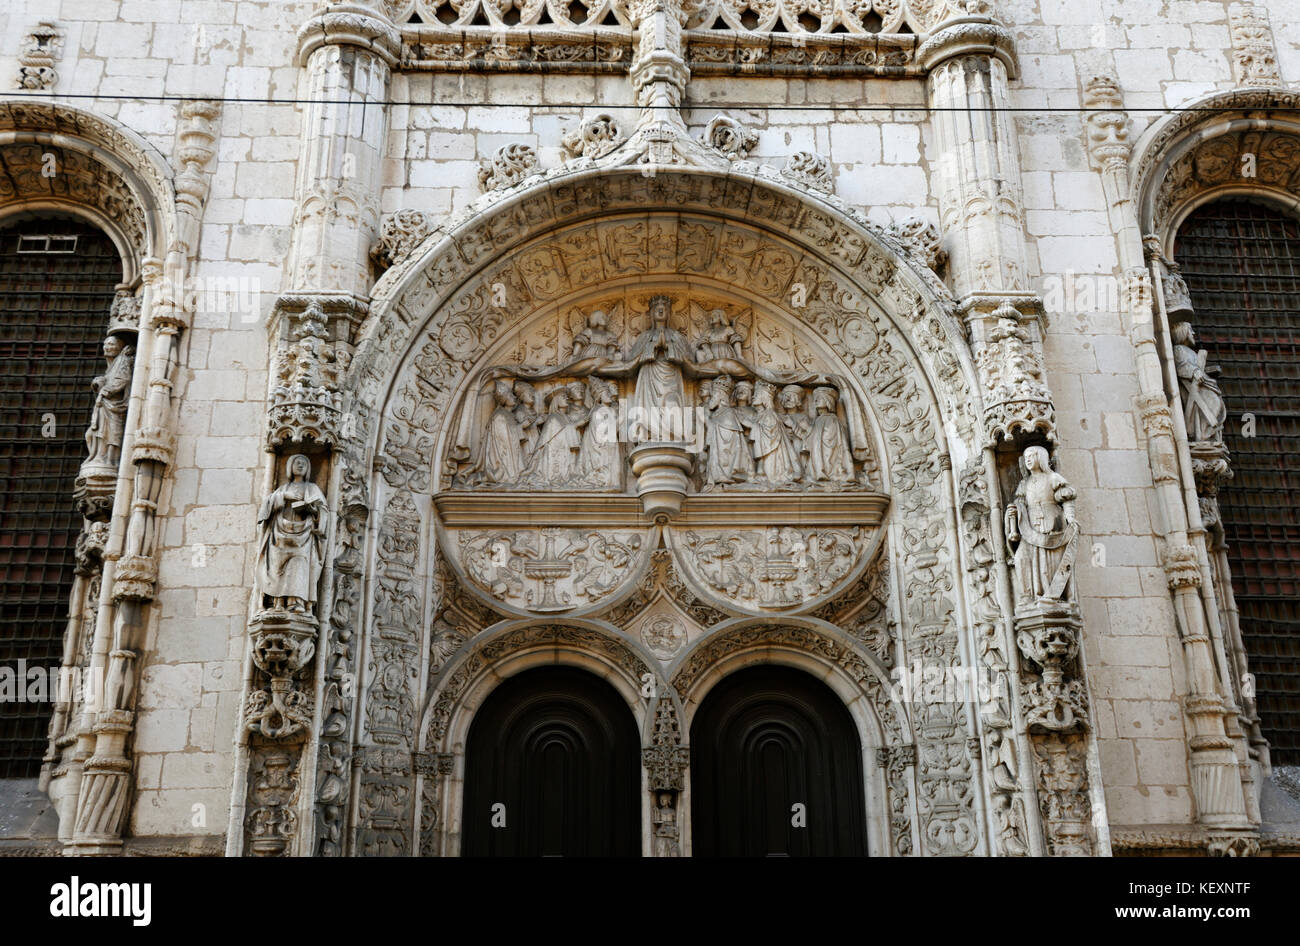 Portal of the Nossa Senhora da Conceição Velha church, Lisbon. Portugal Stock Photo